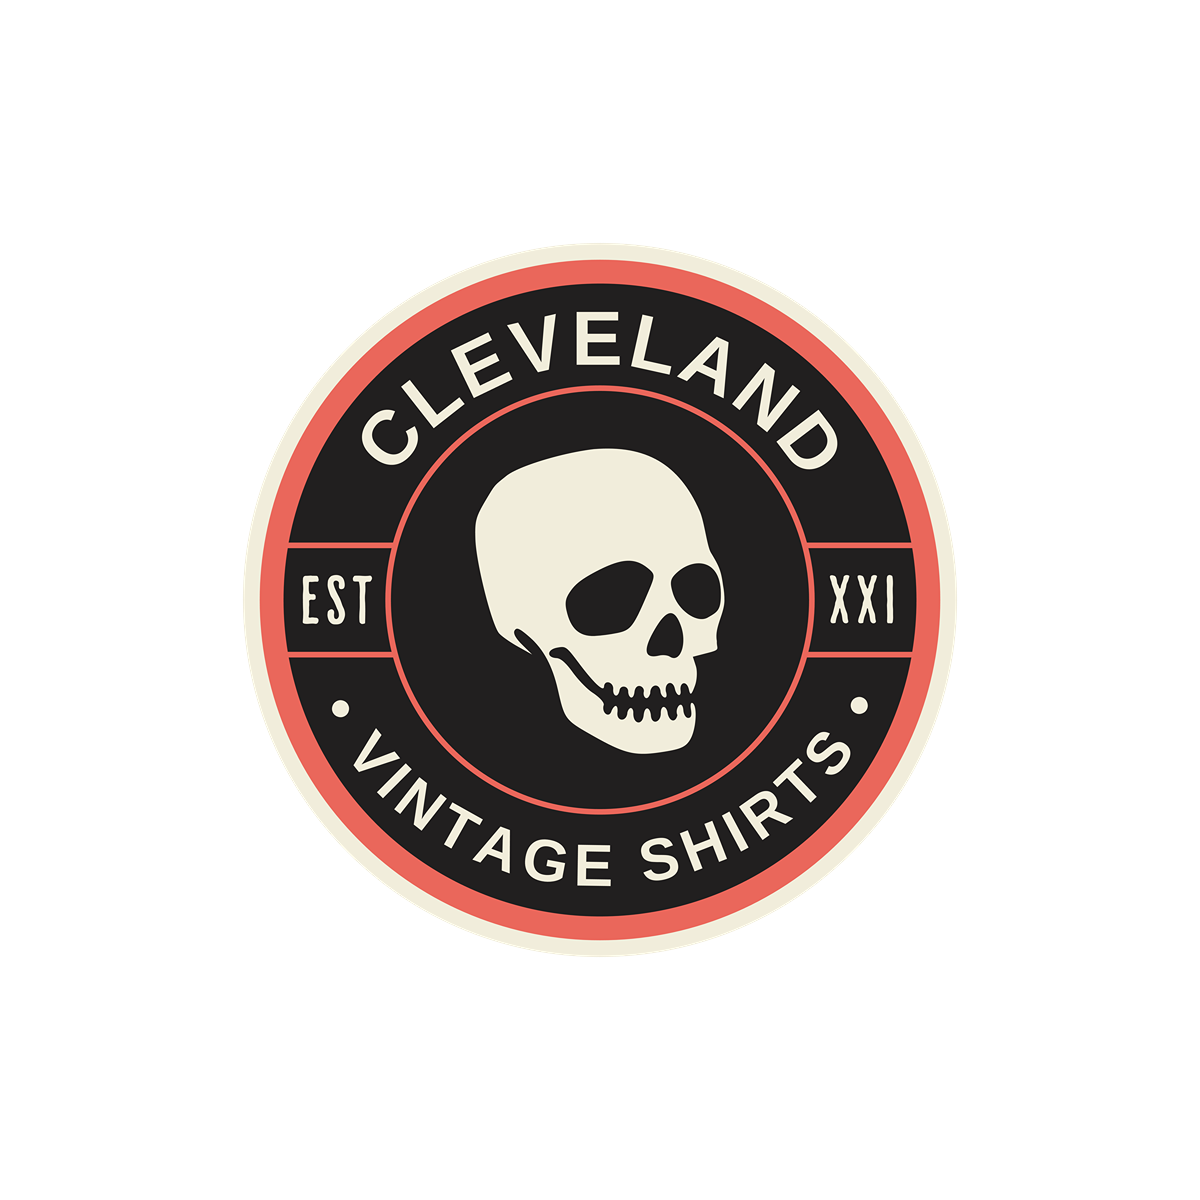 Cleveland Est. 1970 Vintage Cleveland Cavaliers Shirt Cleveland